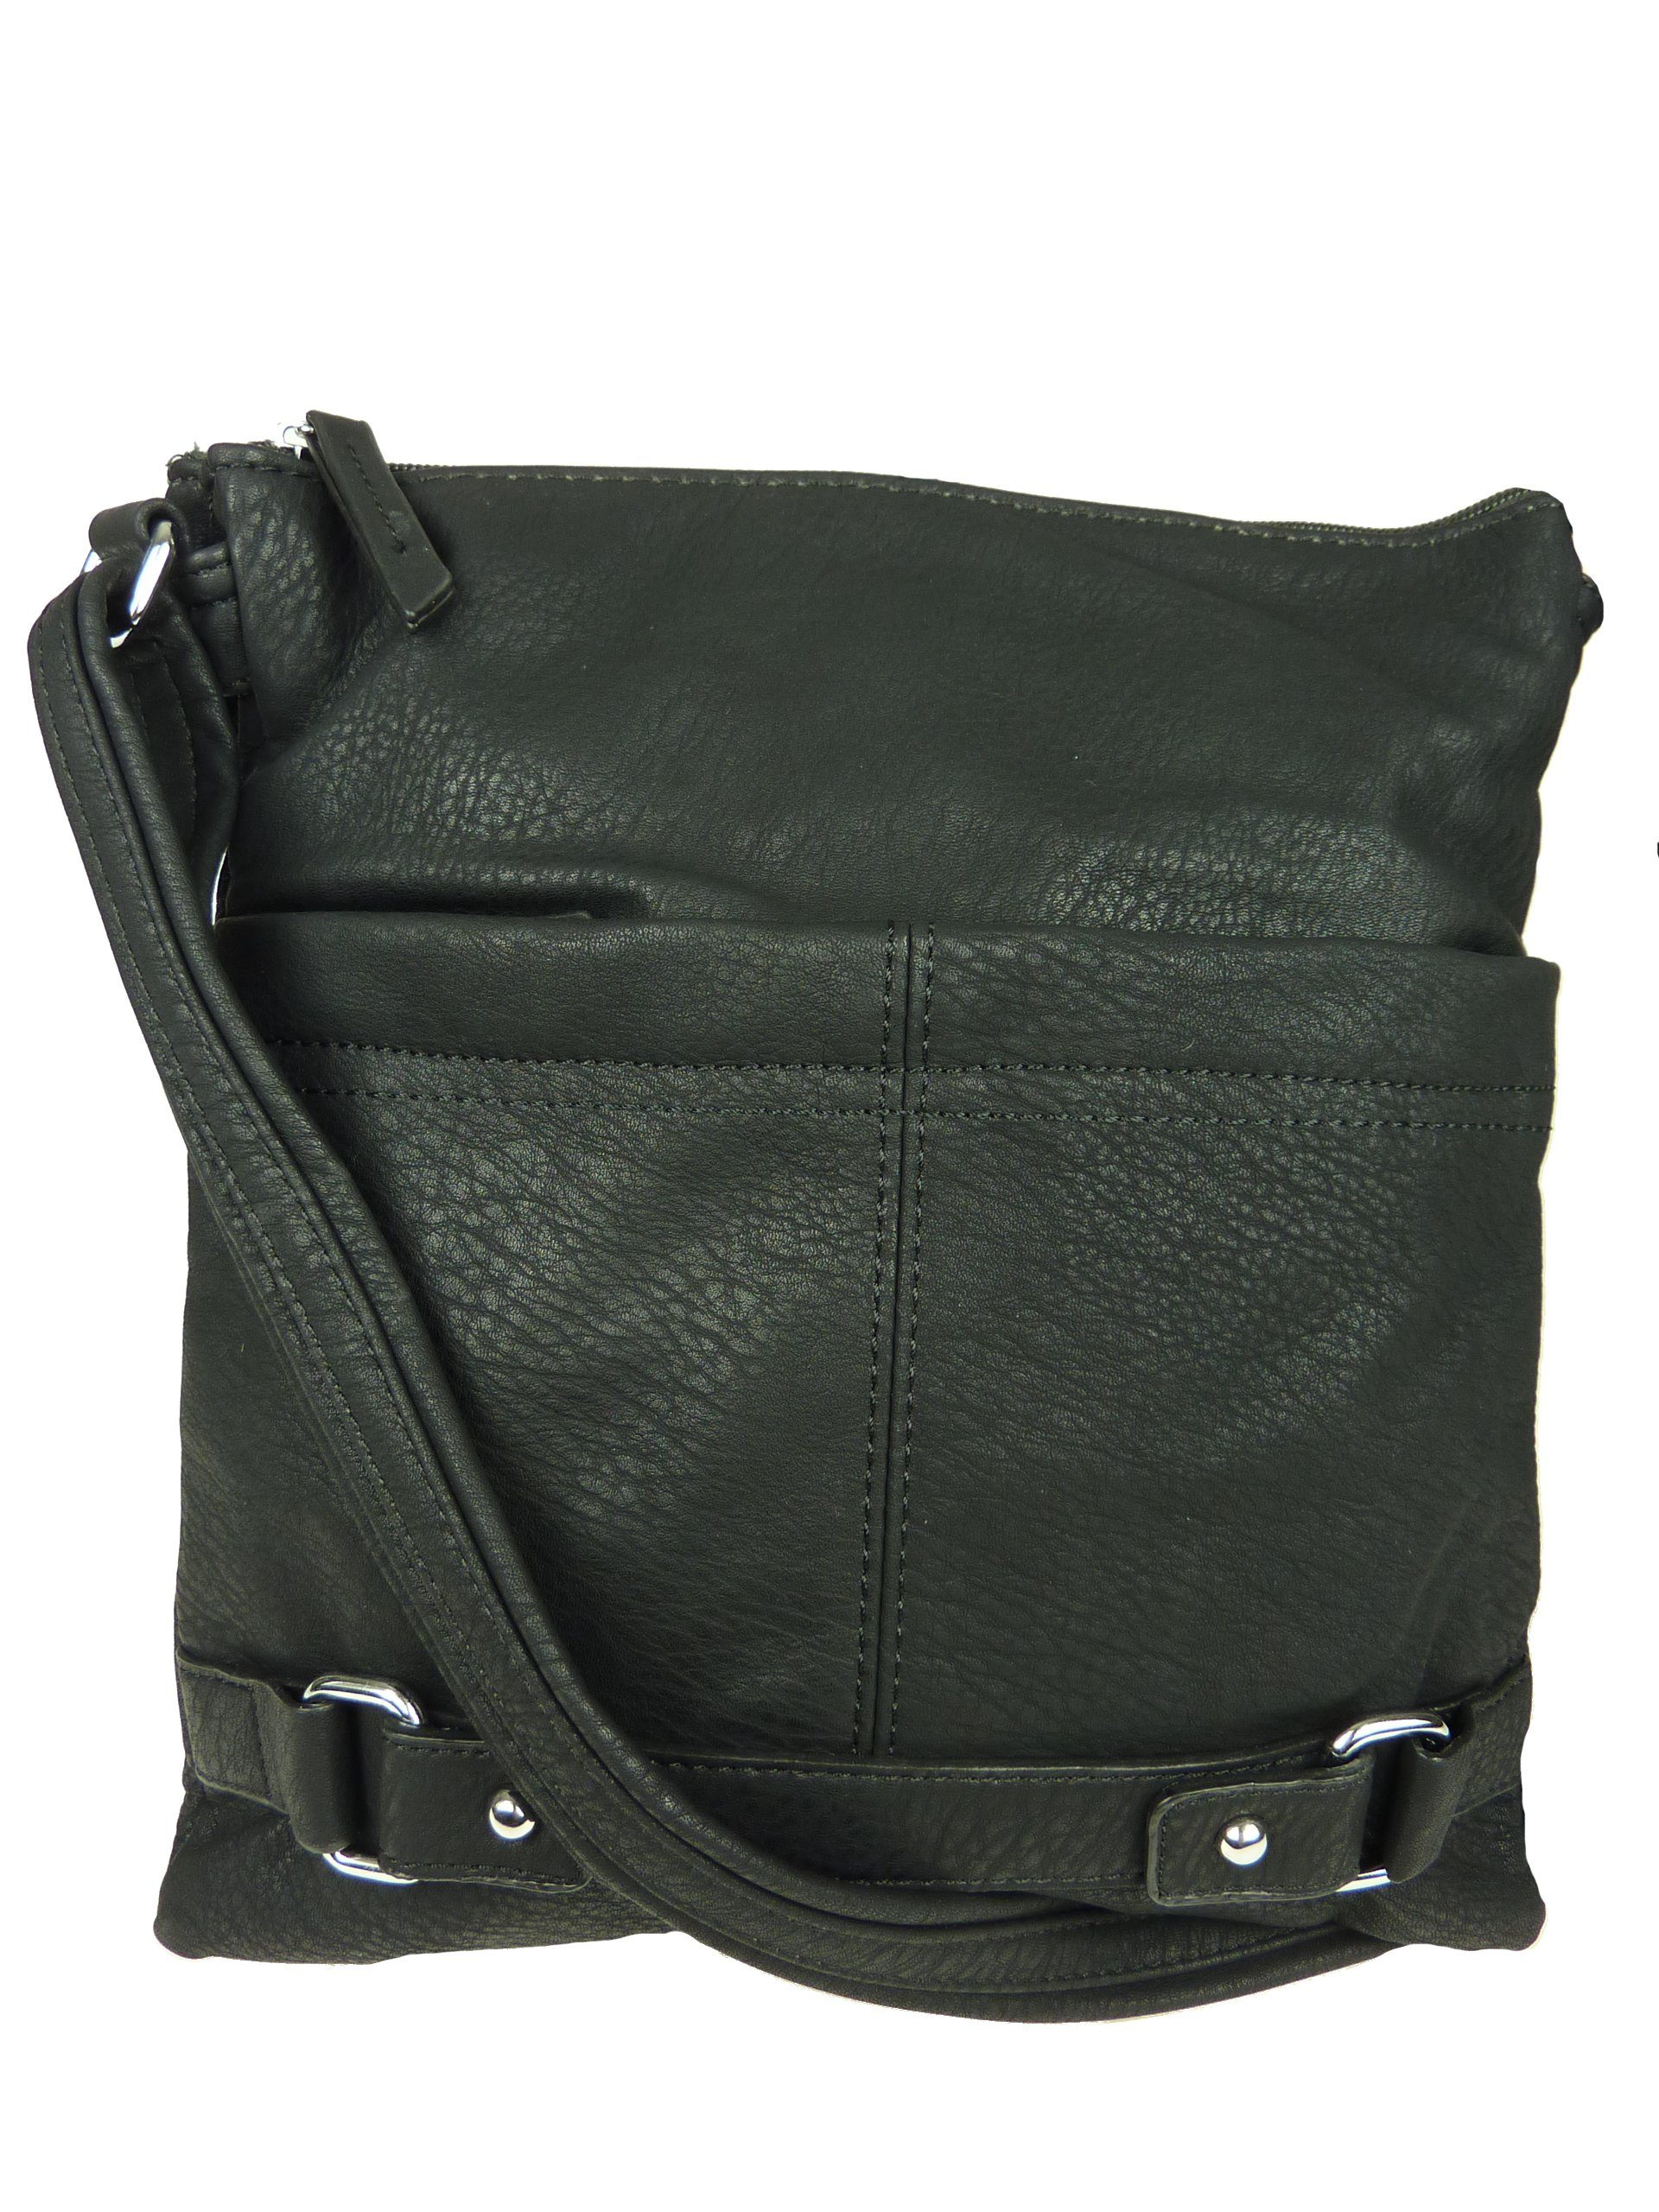 Taschen4life Umhängetasche kleine Damen Handtasche 17154, mini Schultertasche, cross over bag, Farbkombination black